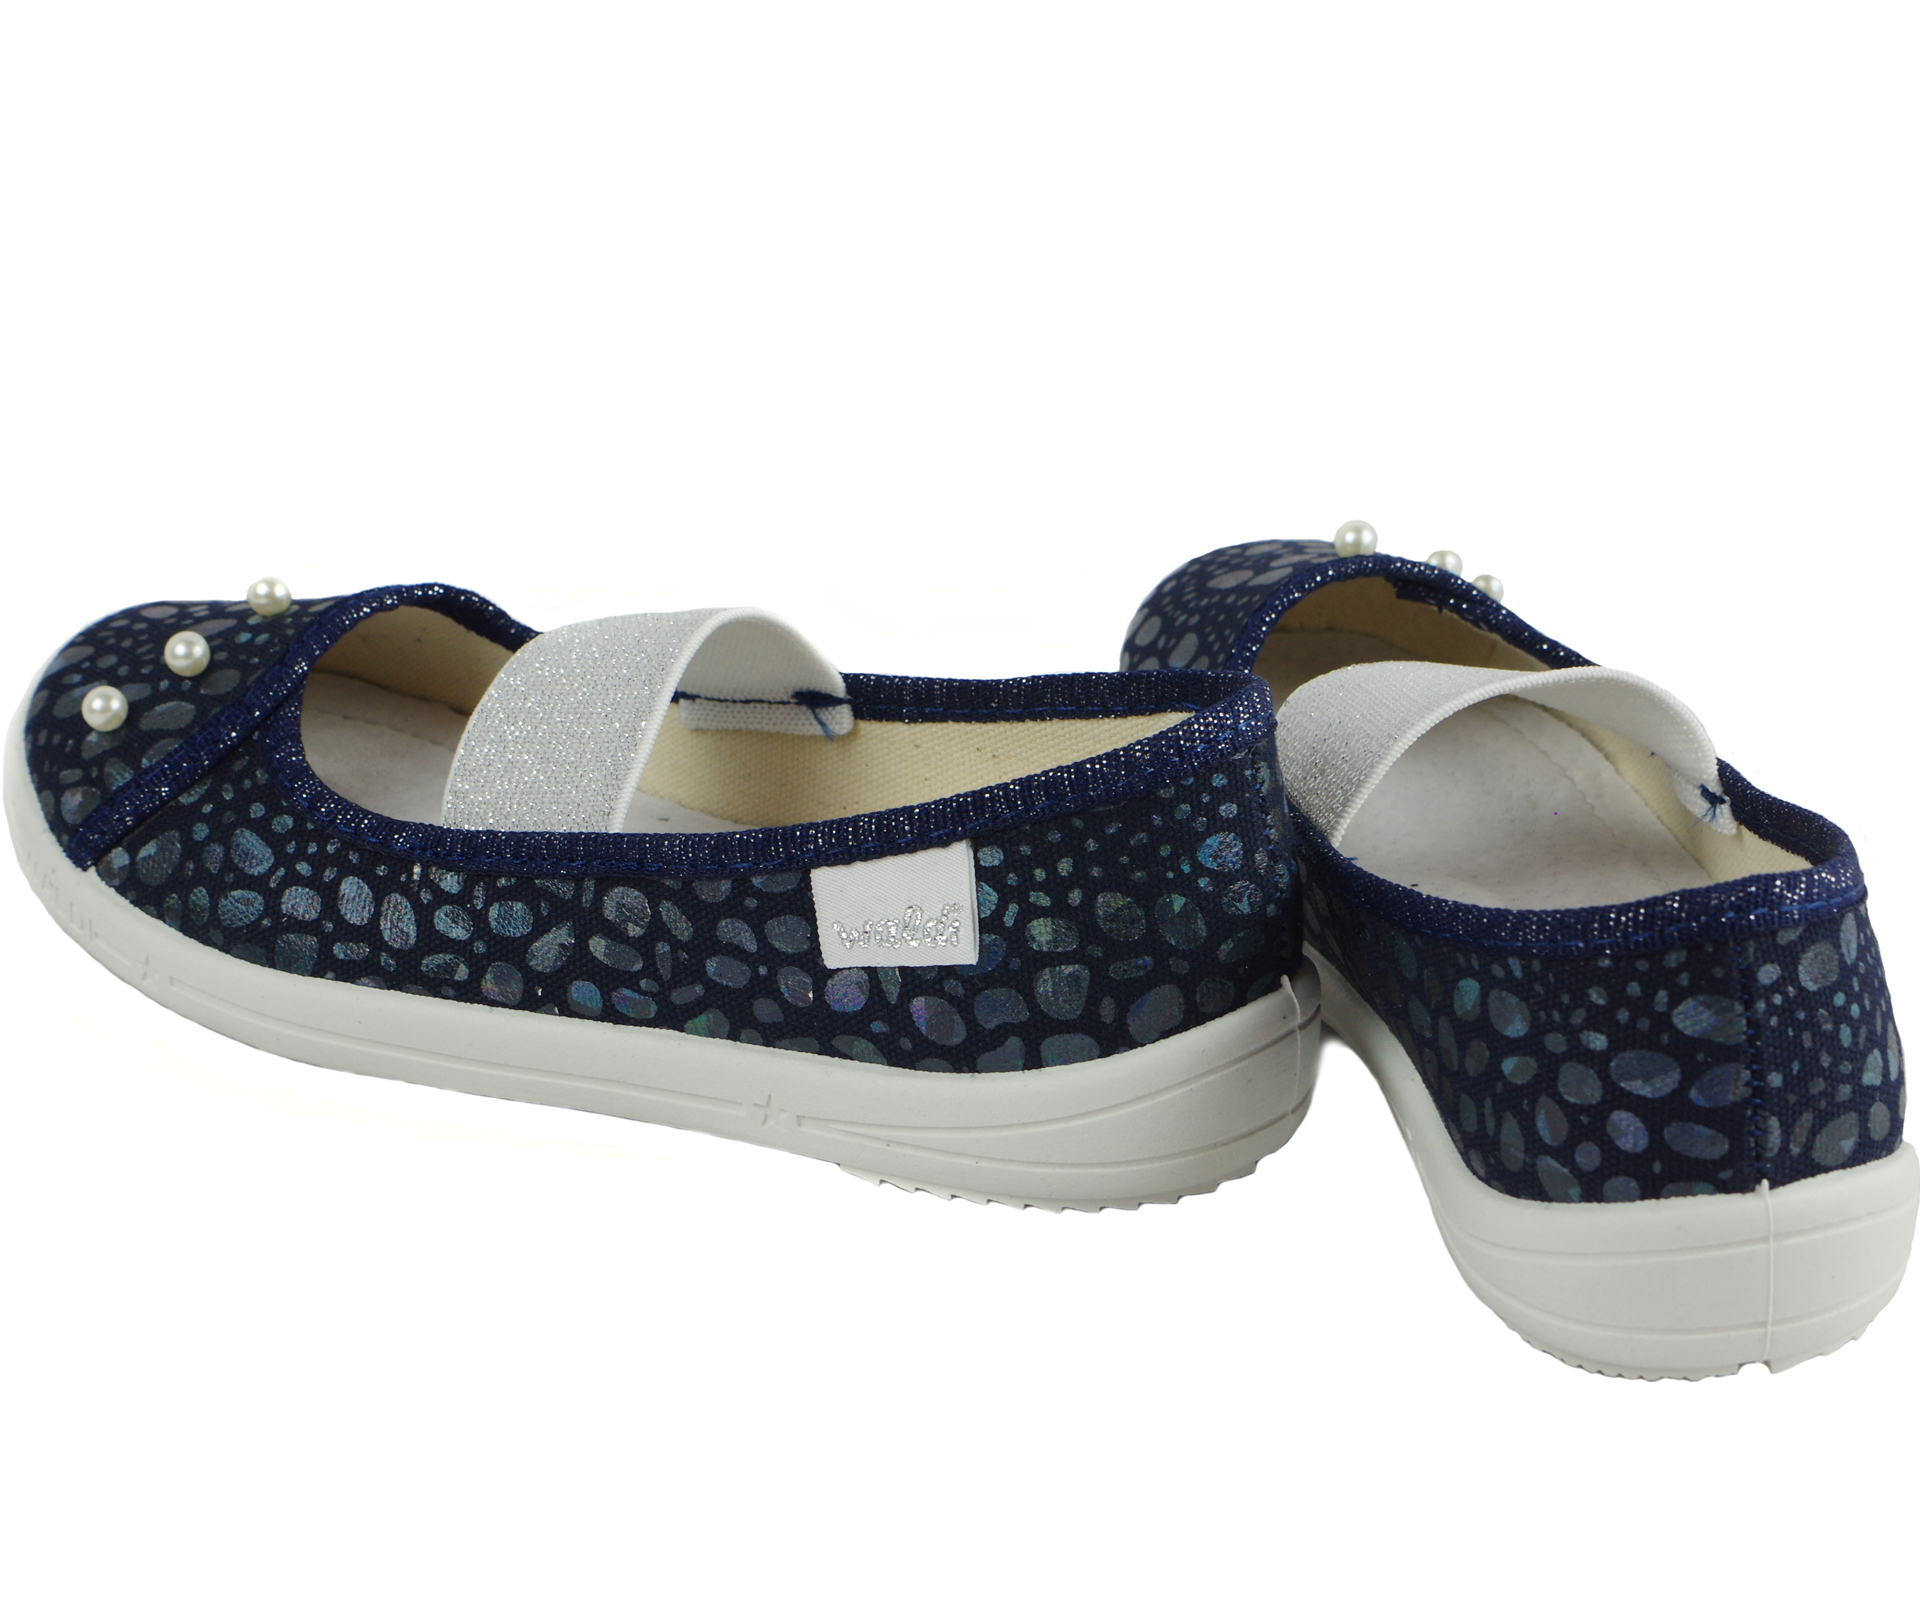 Текстильная обувь для девочек Тапочки Вероника (1919) цвет темно-синий 27-34 размеры – Sole Kids. Фото 2